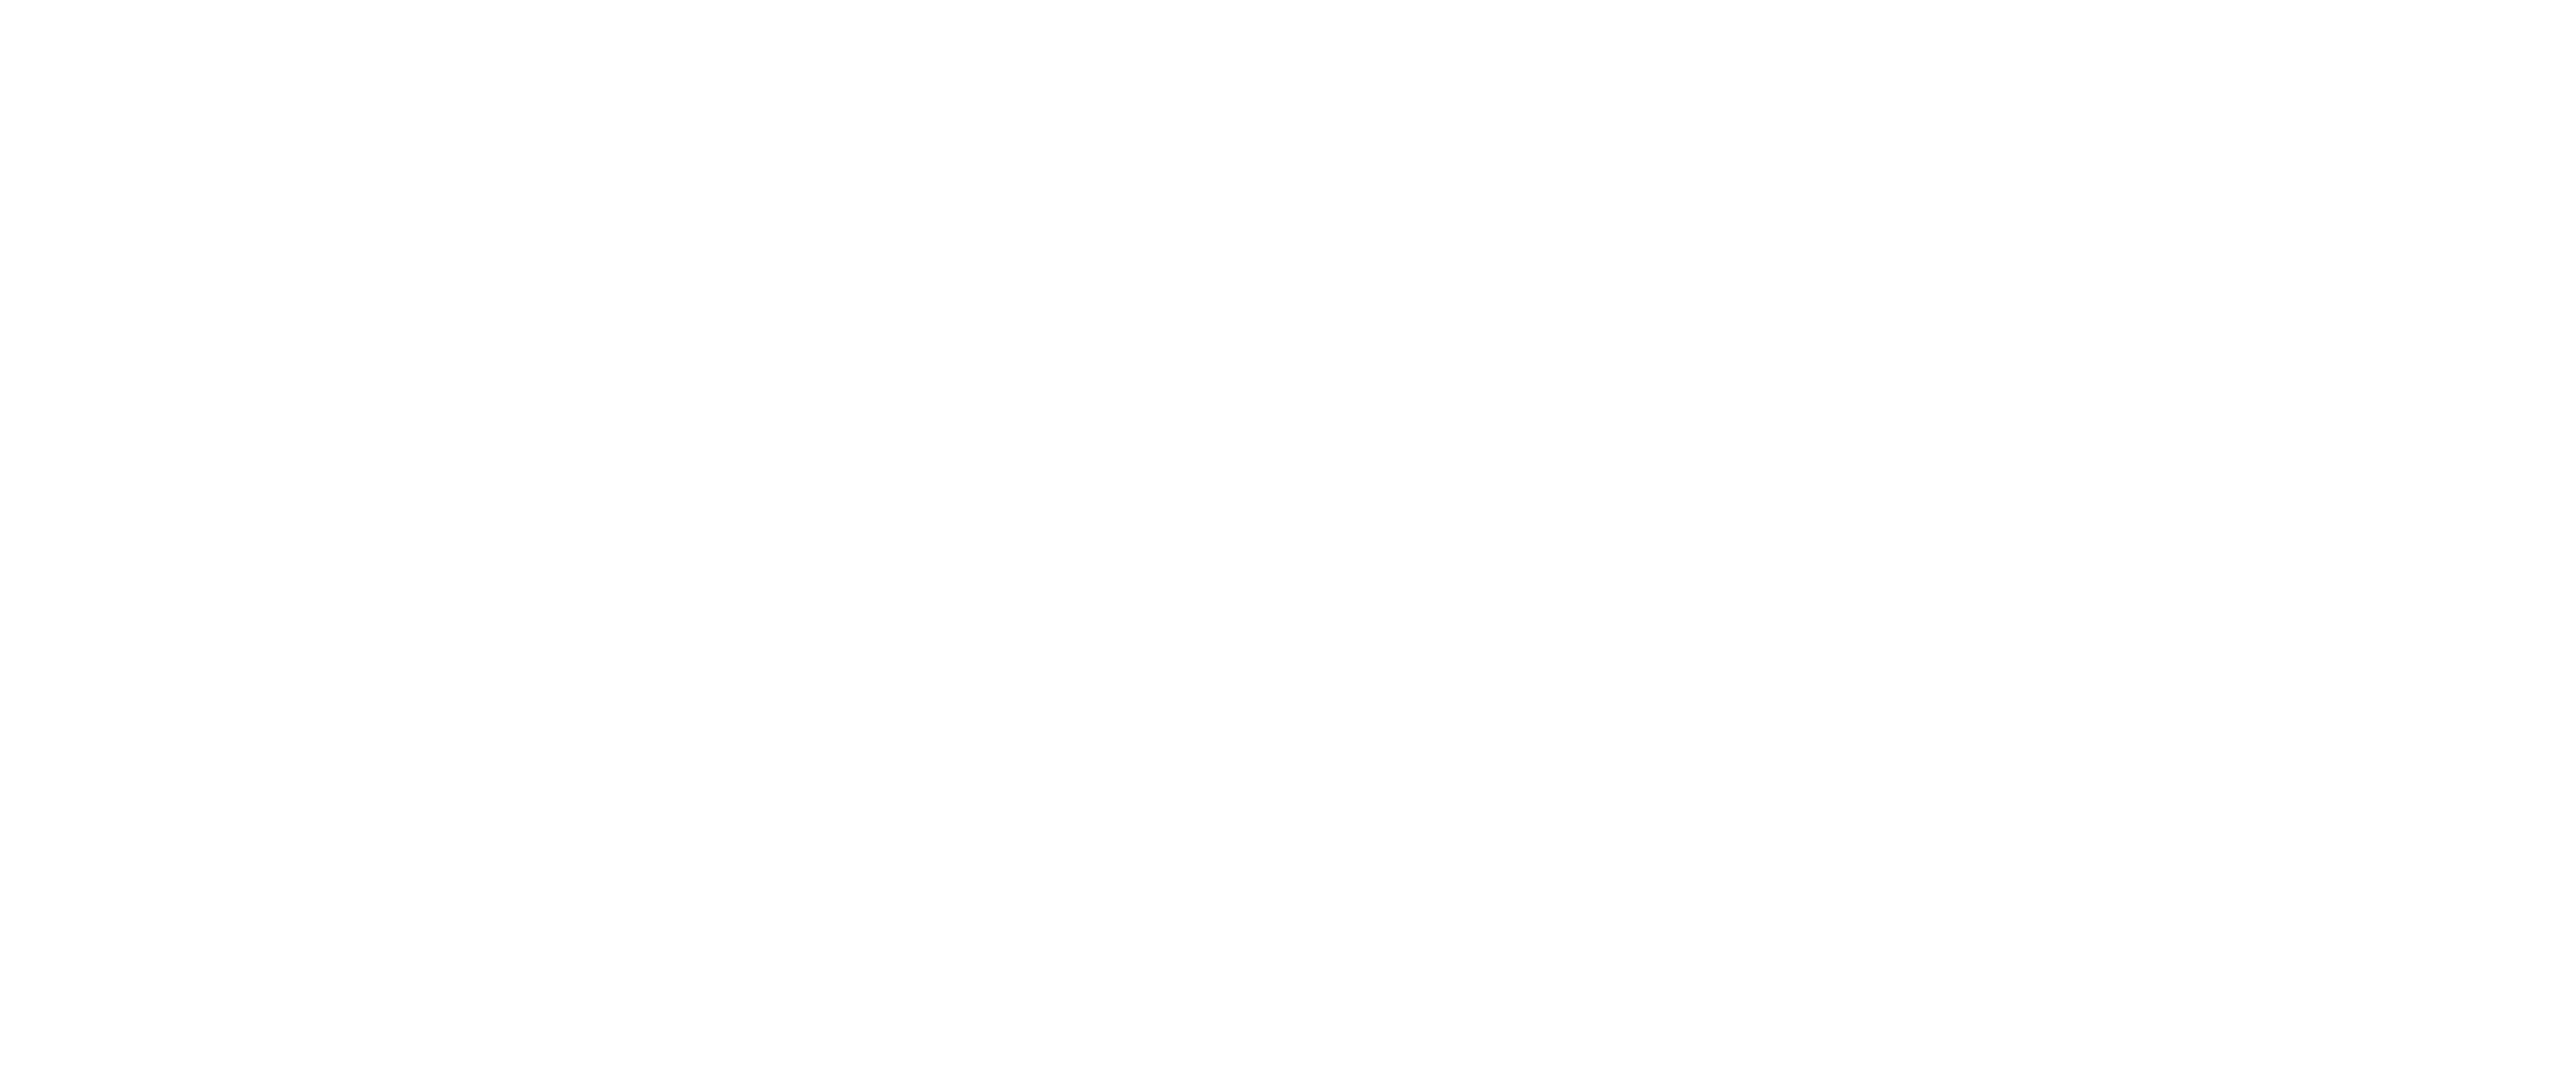 Universidade da Califórnia, Irvine Malaria Initiative